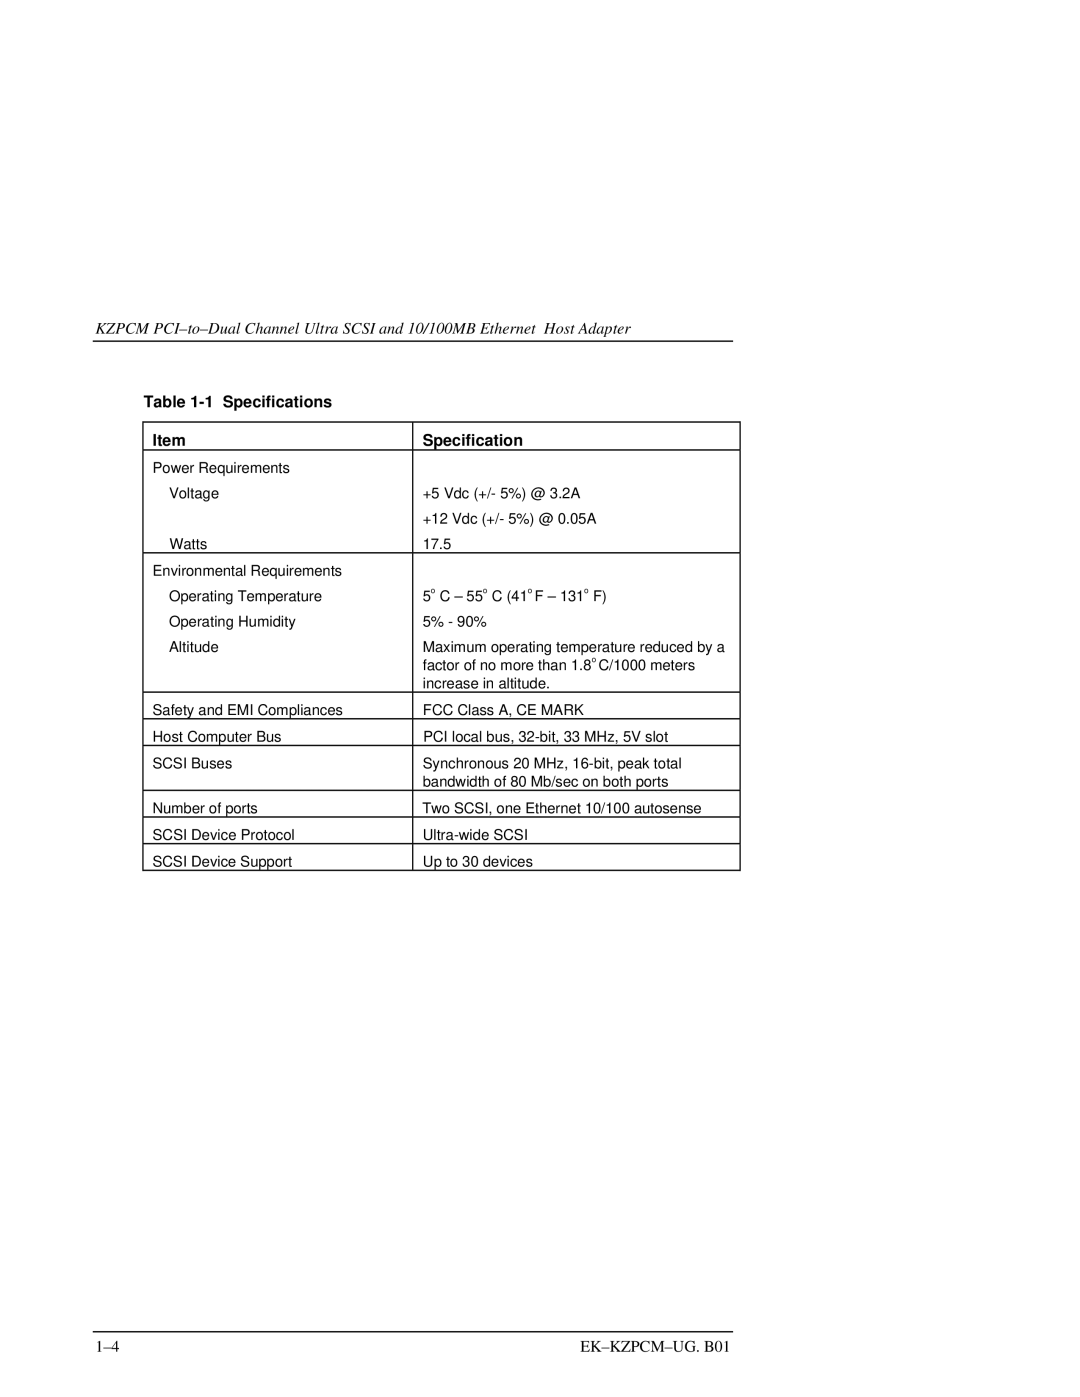 Intel EK-KZPCM-UG manual 1 Specifications 